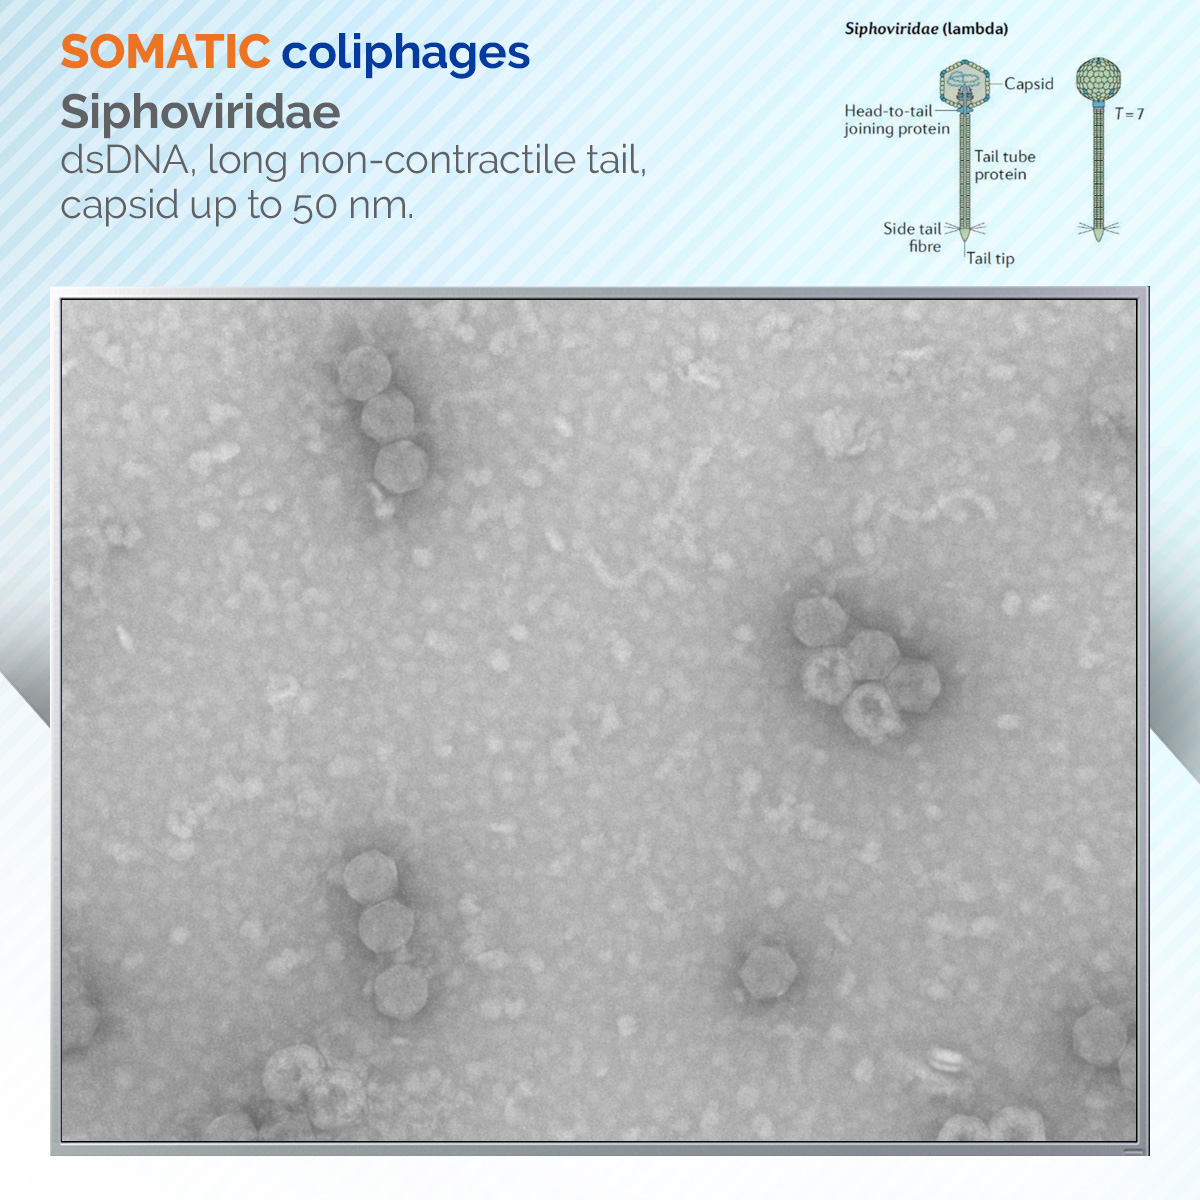 Siphoviridae_somatic coliphages